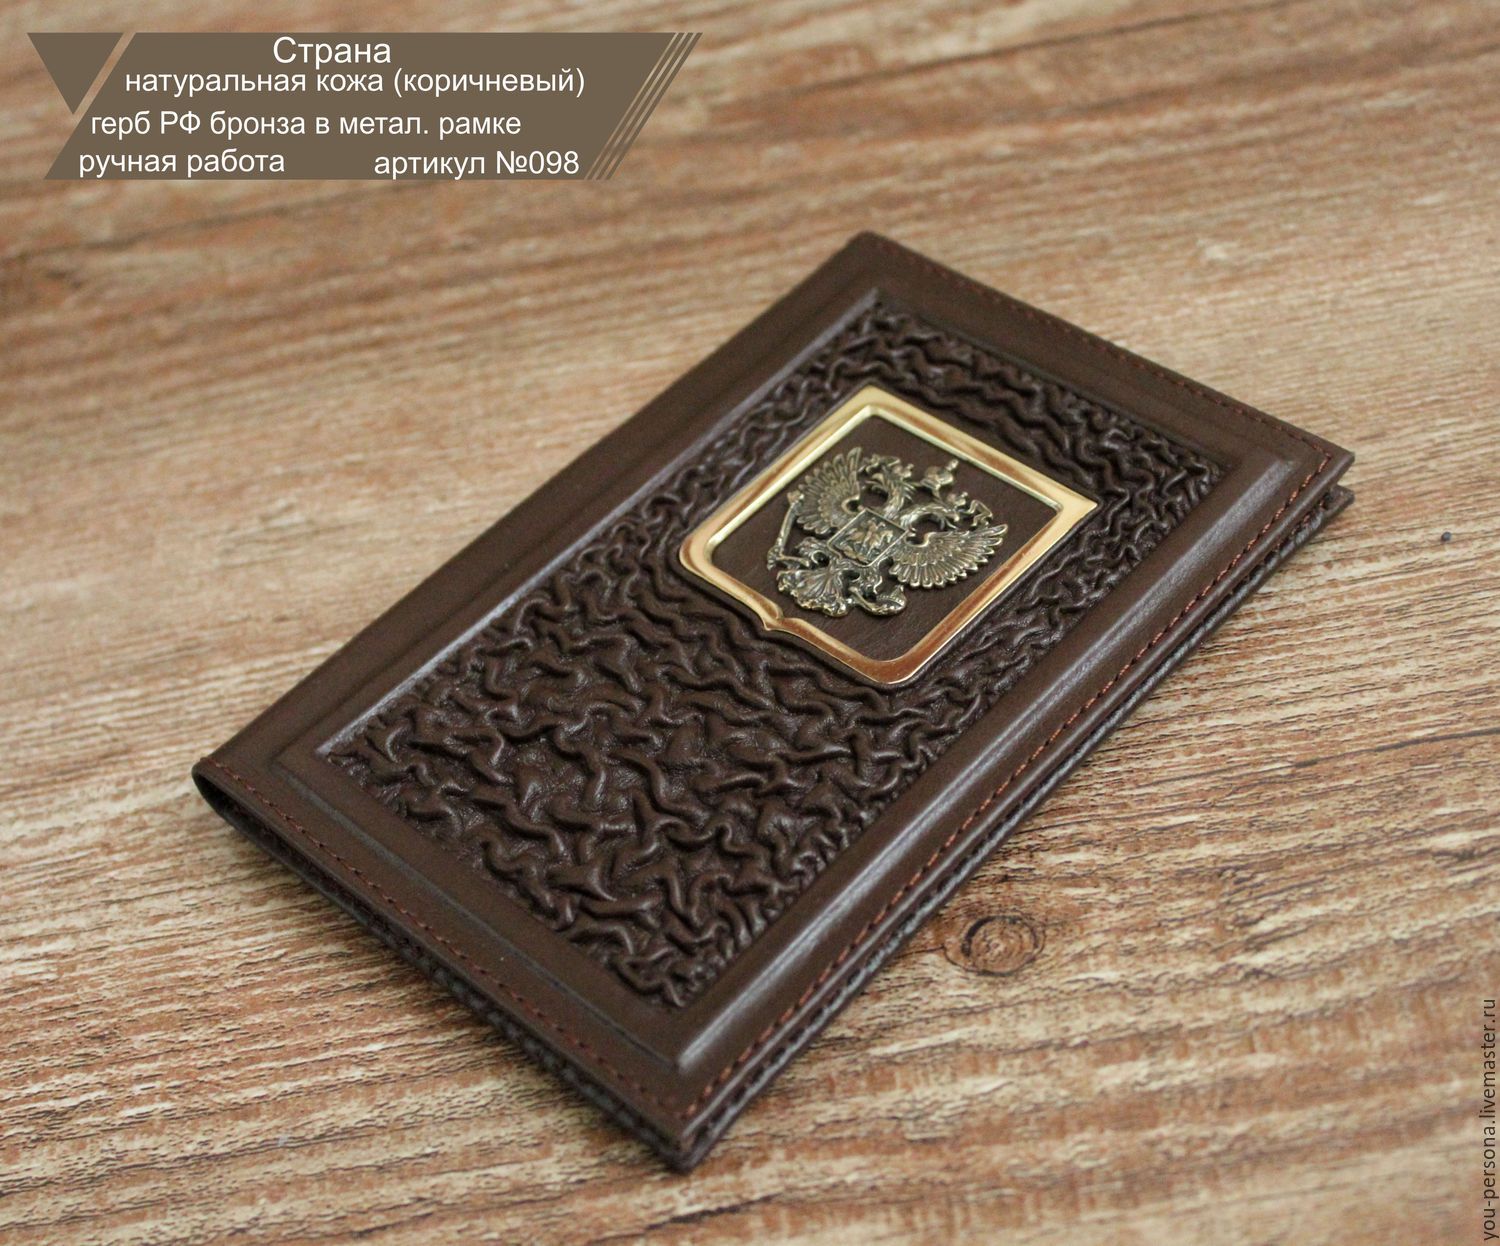 Паспорт "Страна" кожаное изделие, ручная работа, герб РФ бронза